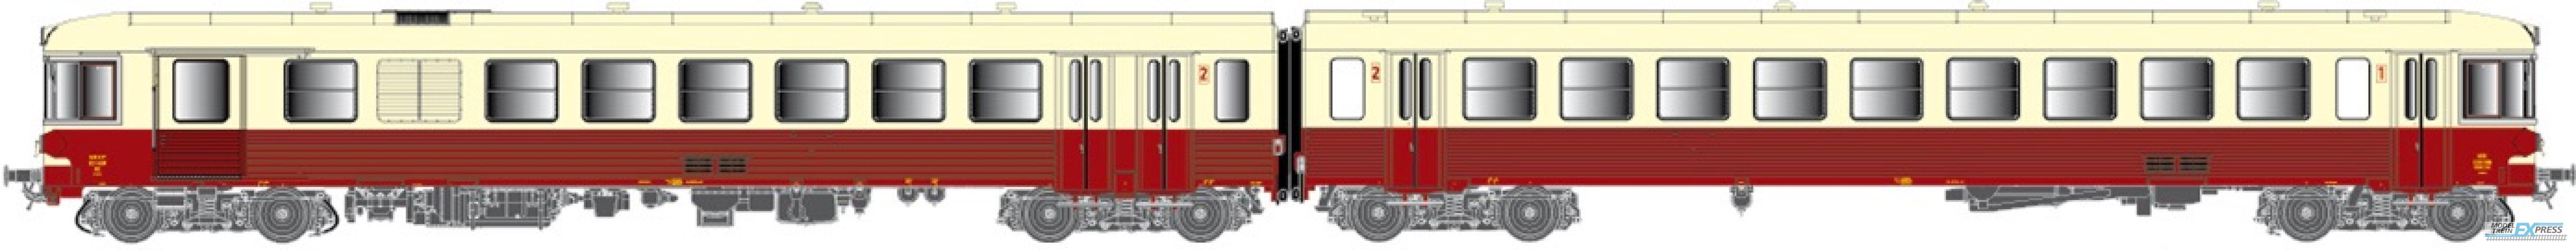 LS Models 10038 X 4329 + XR 8520, rood/creme, rode dak, Panorama raam, oorsprong, met binnenverlichting  /  Ep. IV  /  SNCF  /  HO  /  DC  /  1 P.